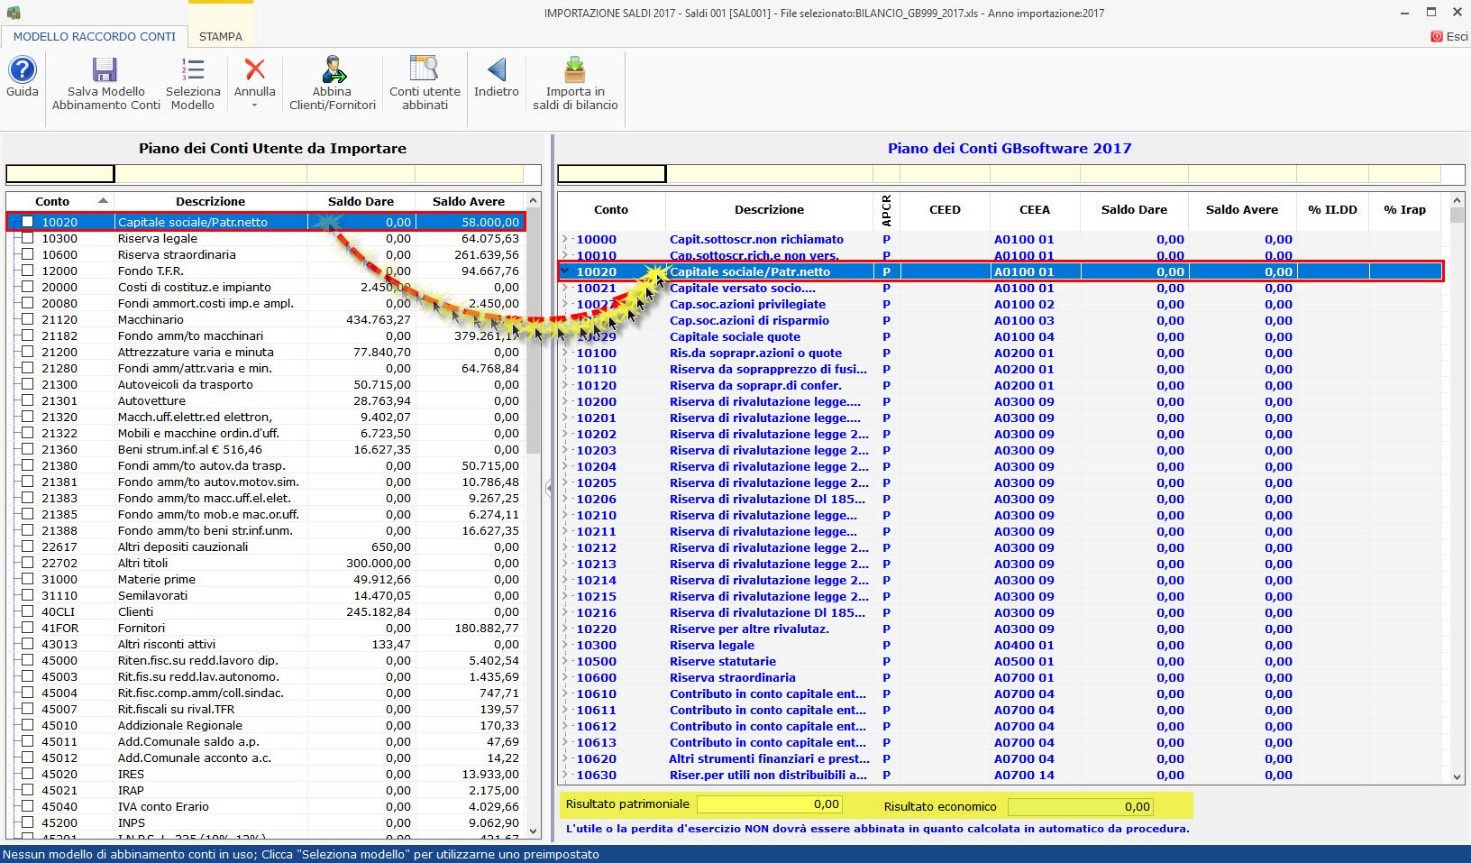 Caricamento analitico da file Excel